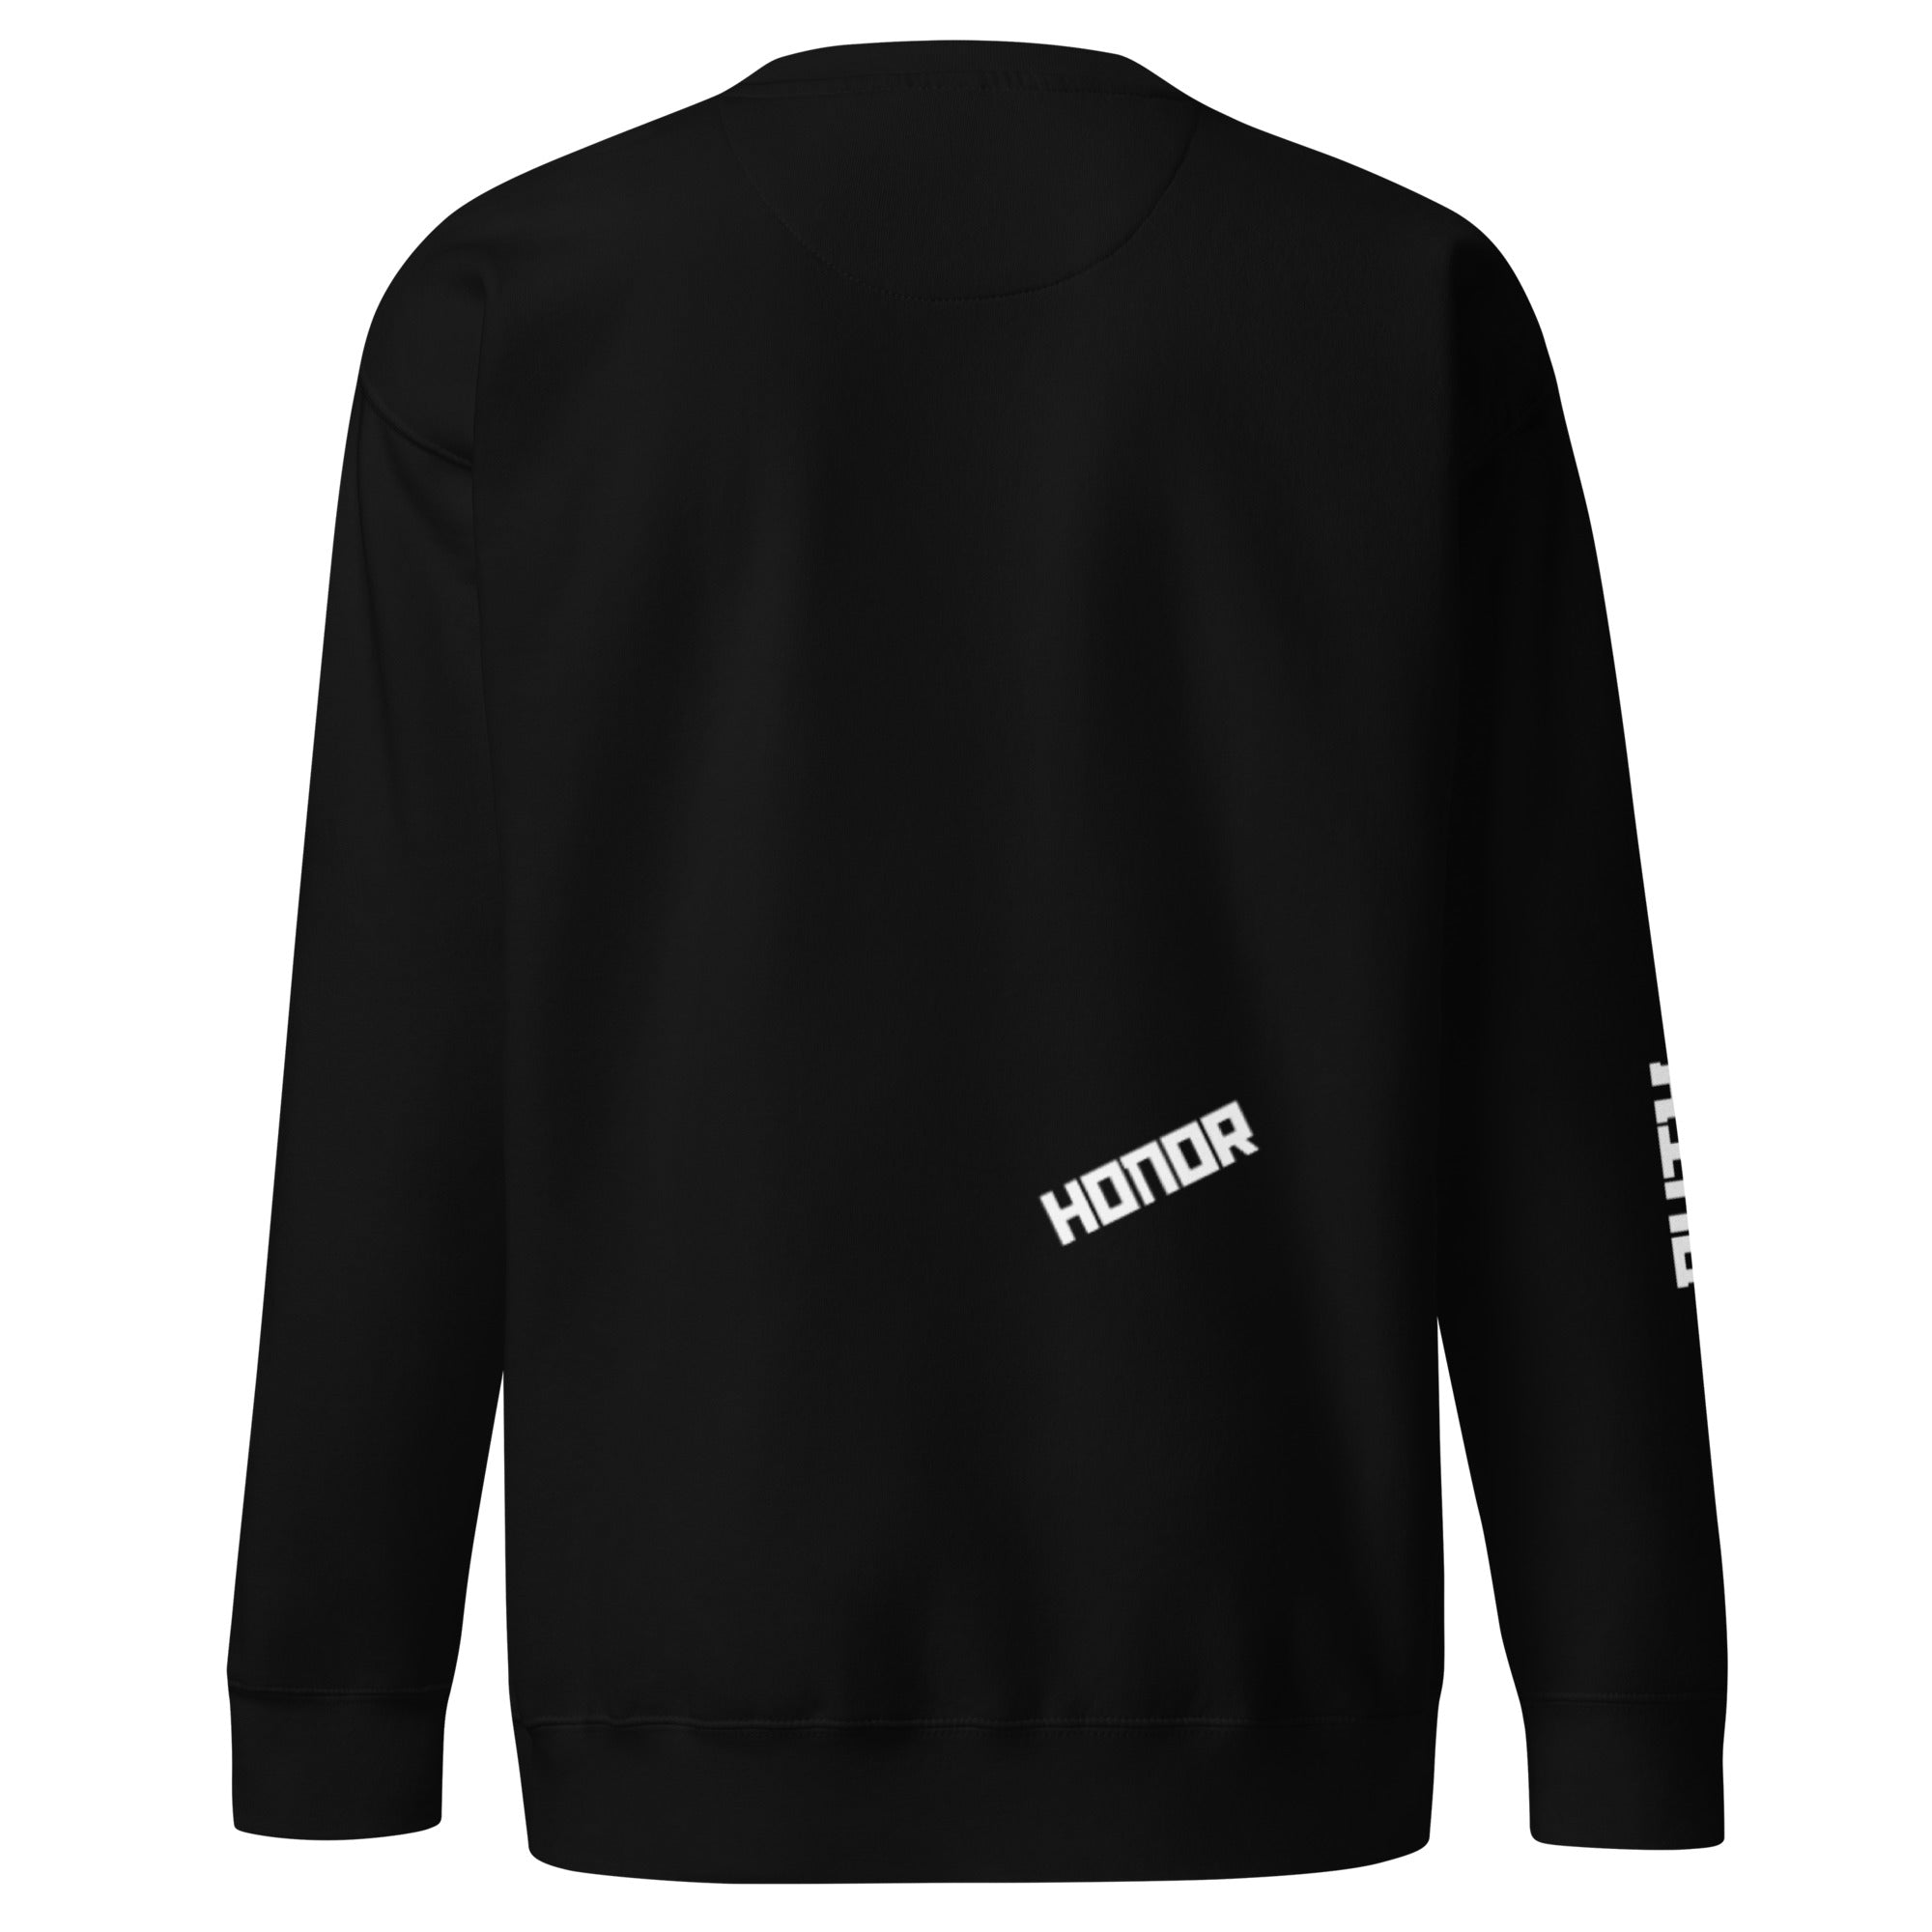 Unisex Premium Sweatshirt - America Duty Honor - GRAPHIC T-SHIRTS